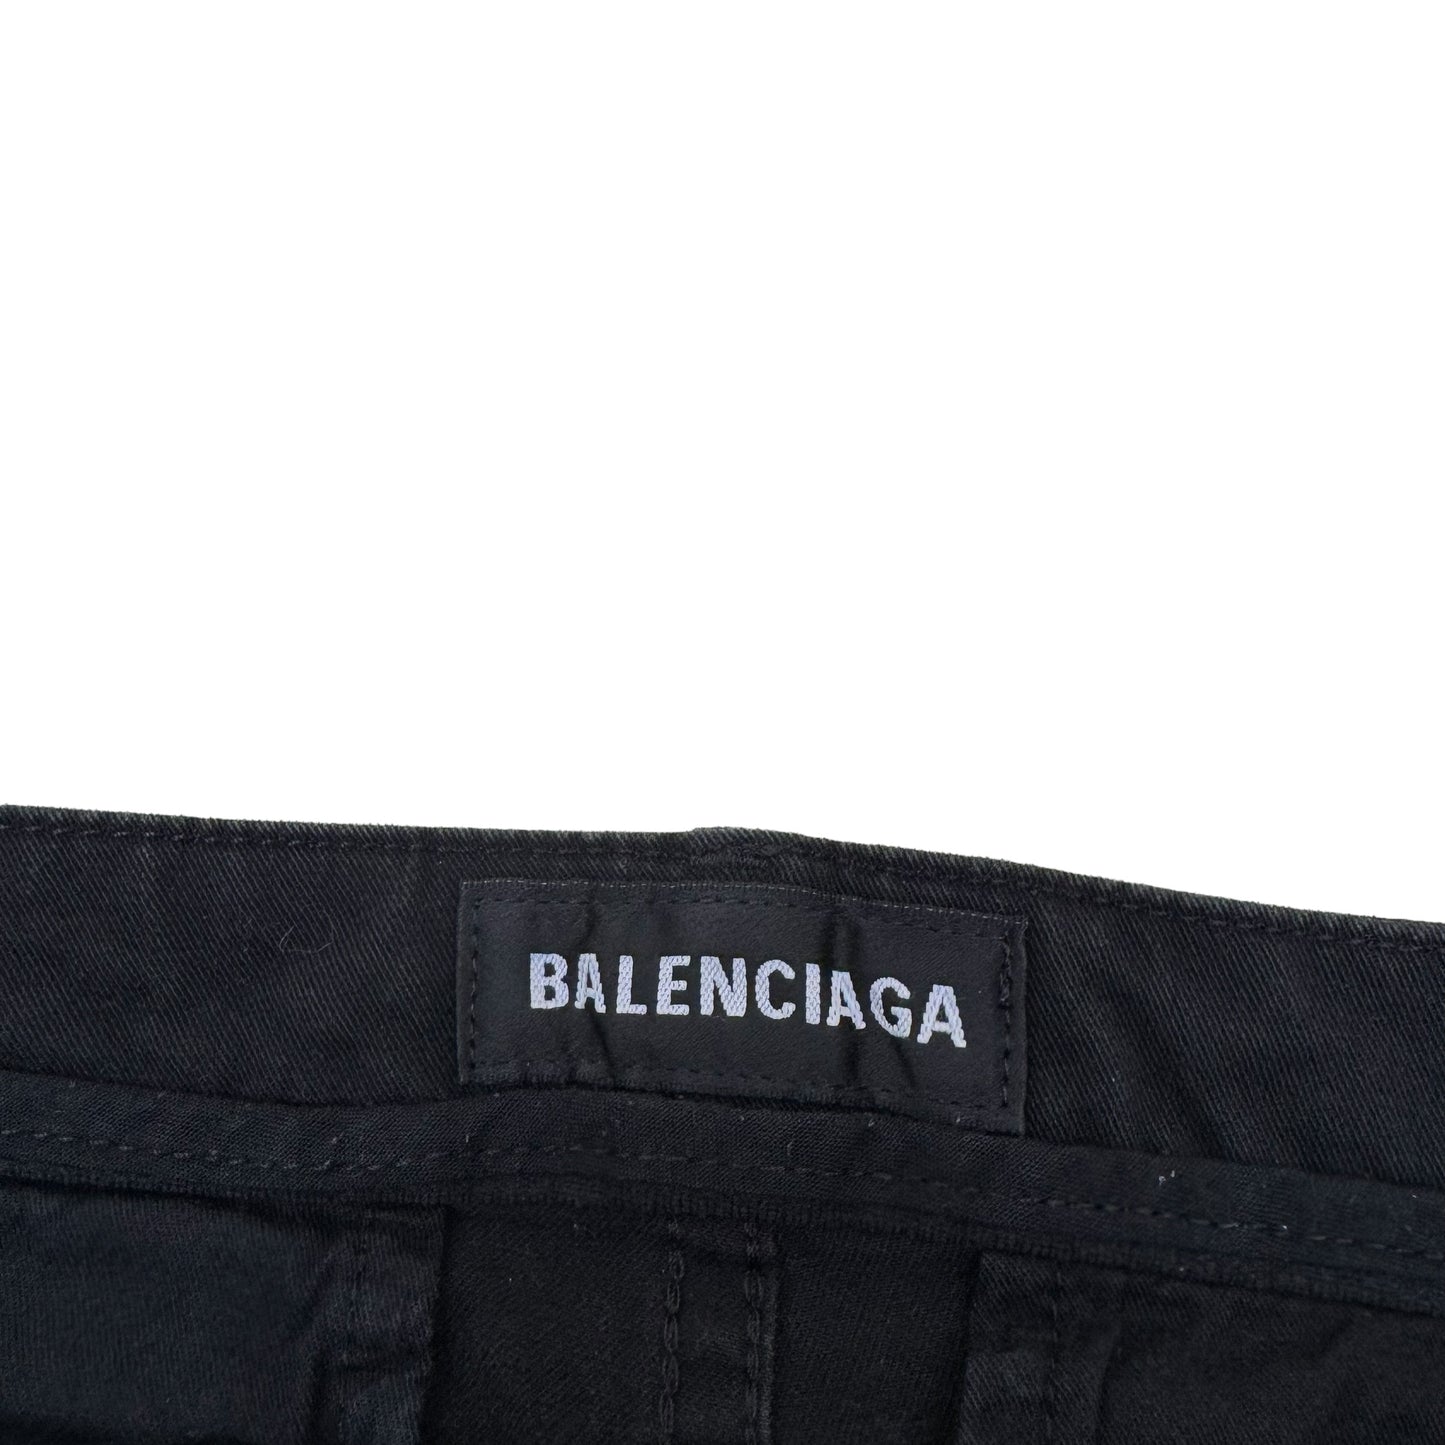 BALENCIAGA CARGO PANTS BLACK M